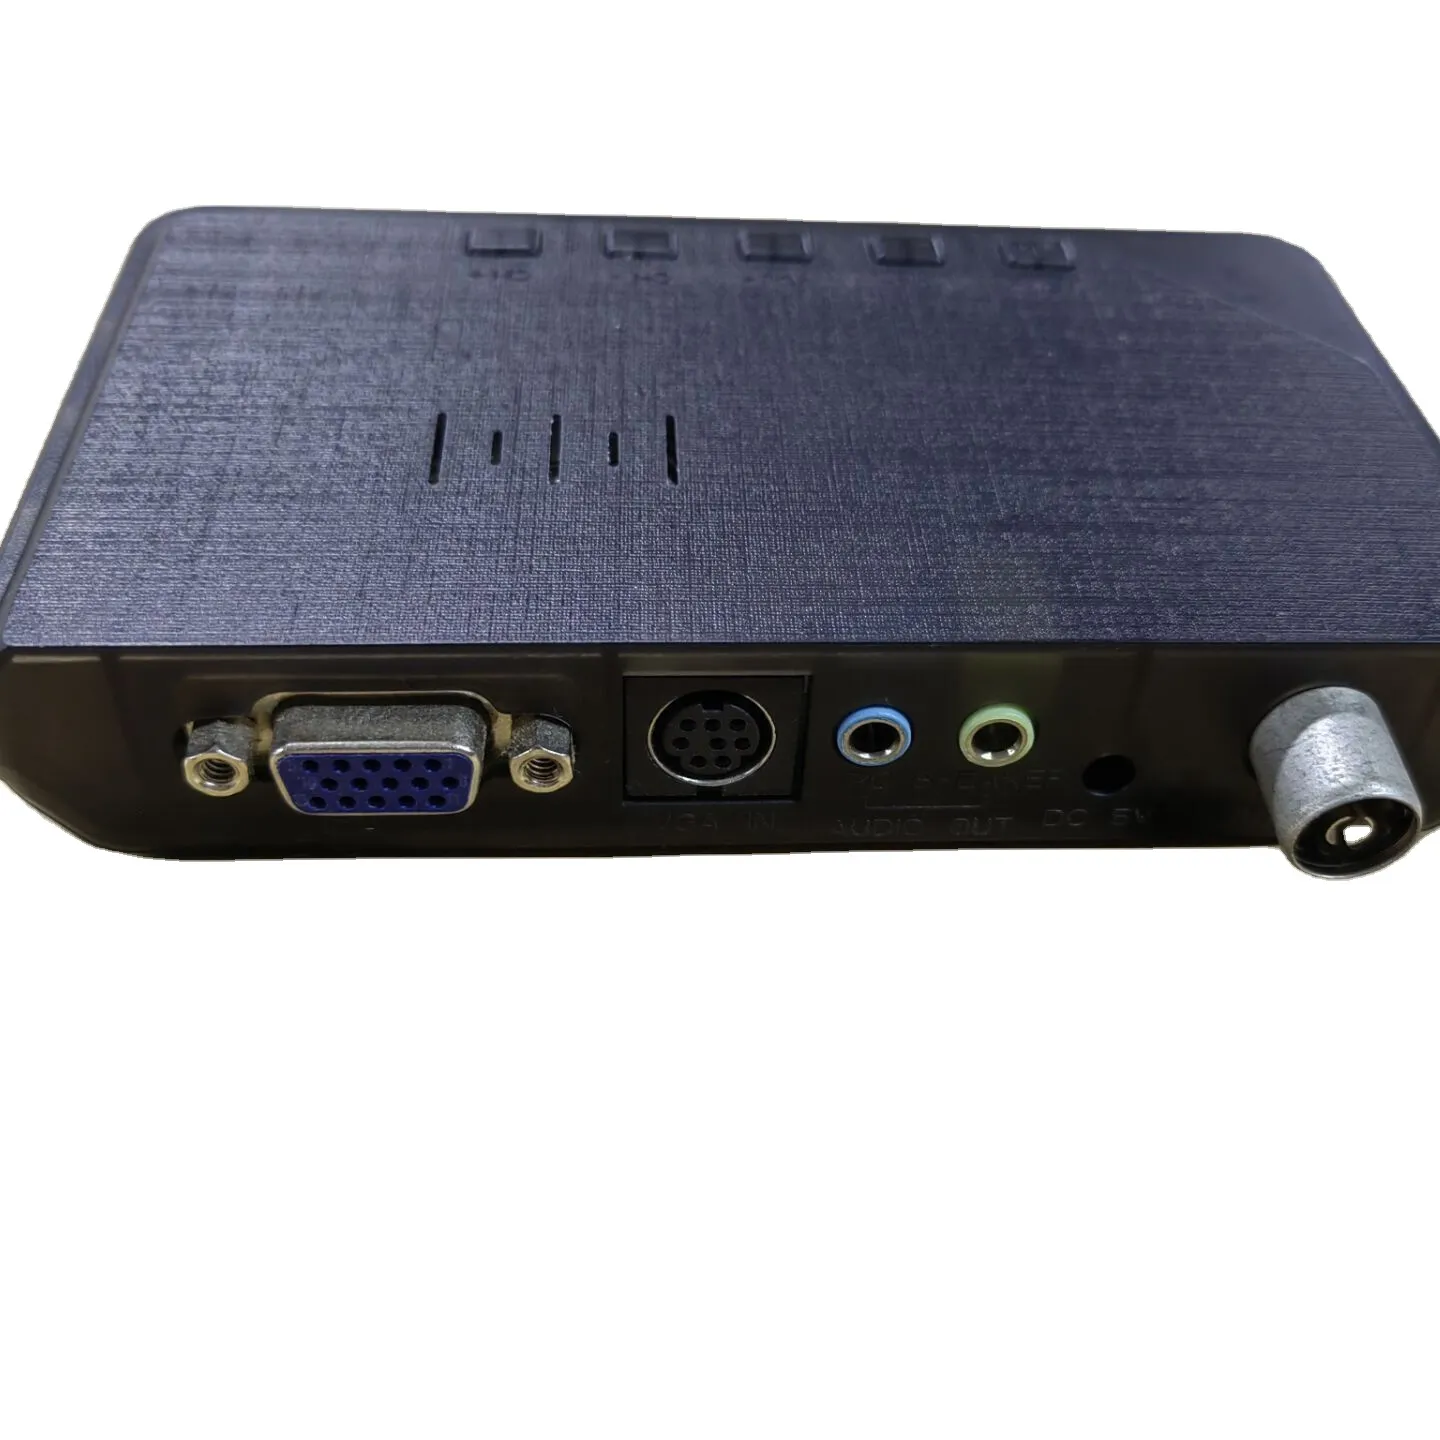 Truyền hình nhà âm thanh video & phụ kiện bên ngoài LCD VGA PC màn hình TV Tuner được xây dựng trong loa Gadmei XGA TV Box